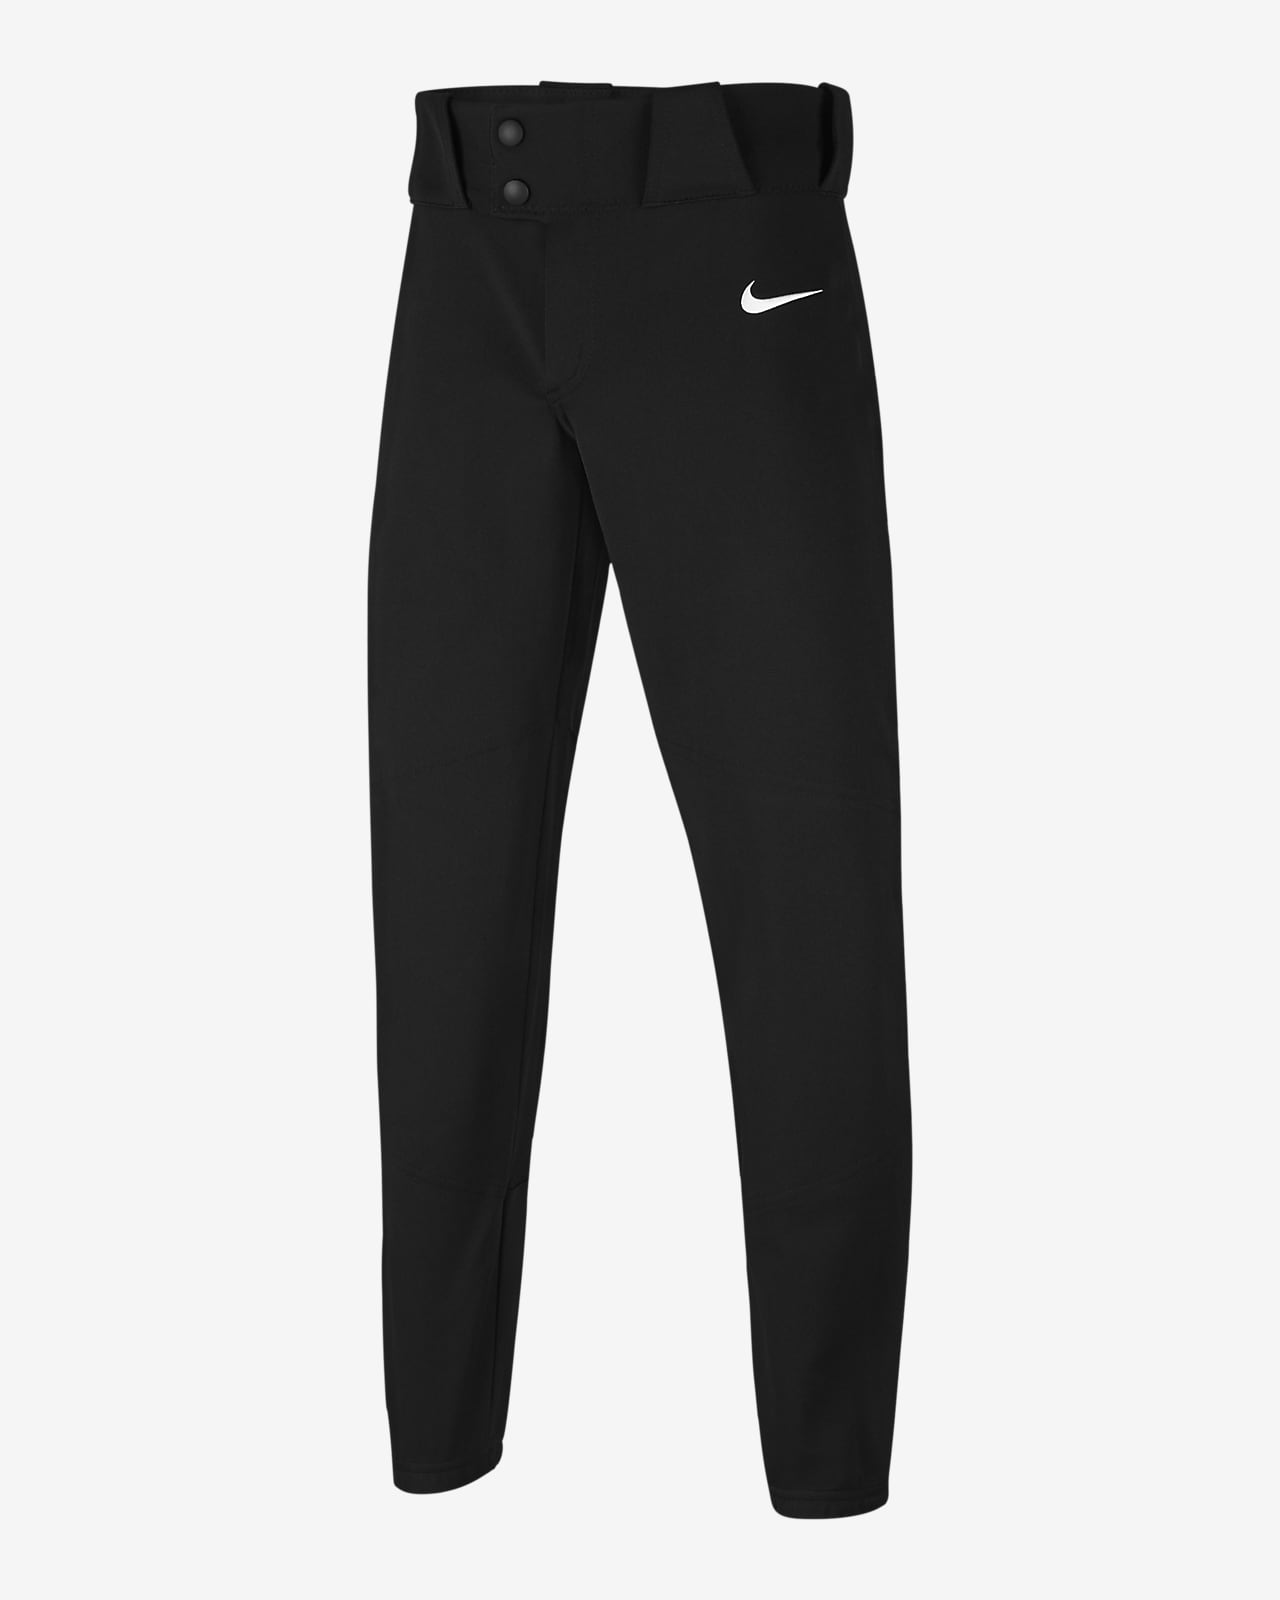 Pantalones de béisbol elastizados para niño talla grande Nike Vapor.